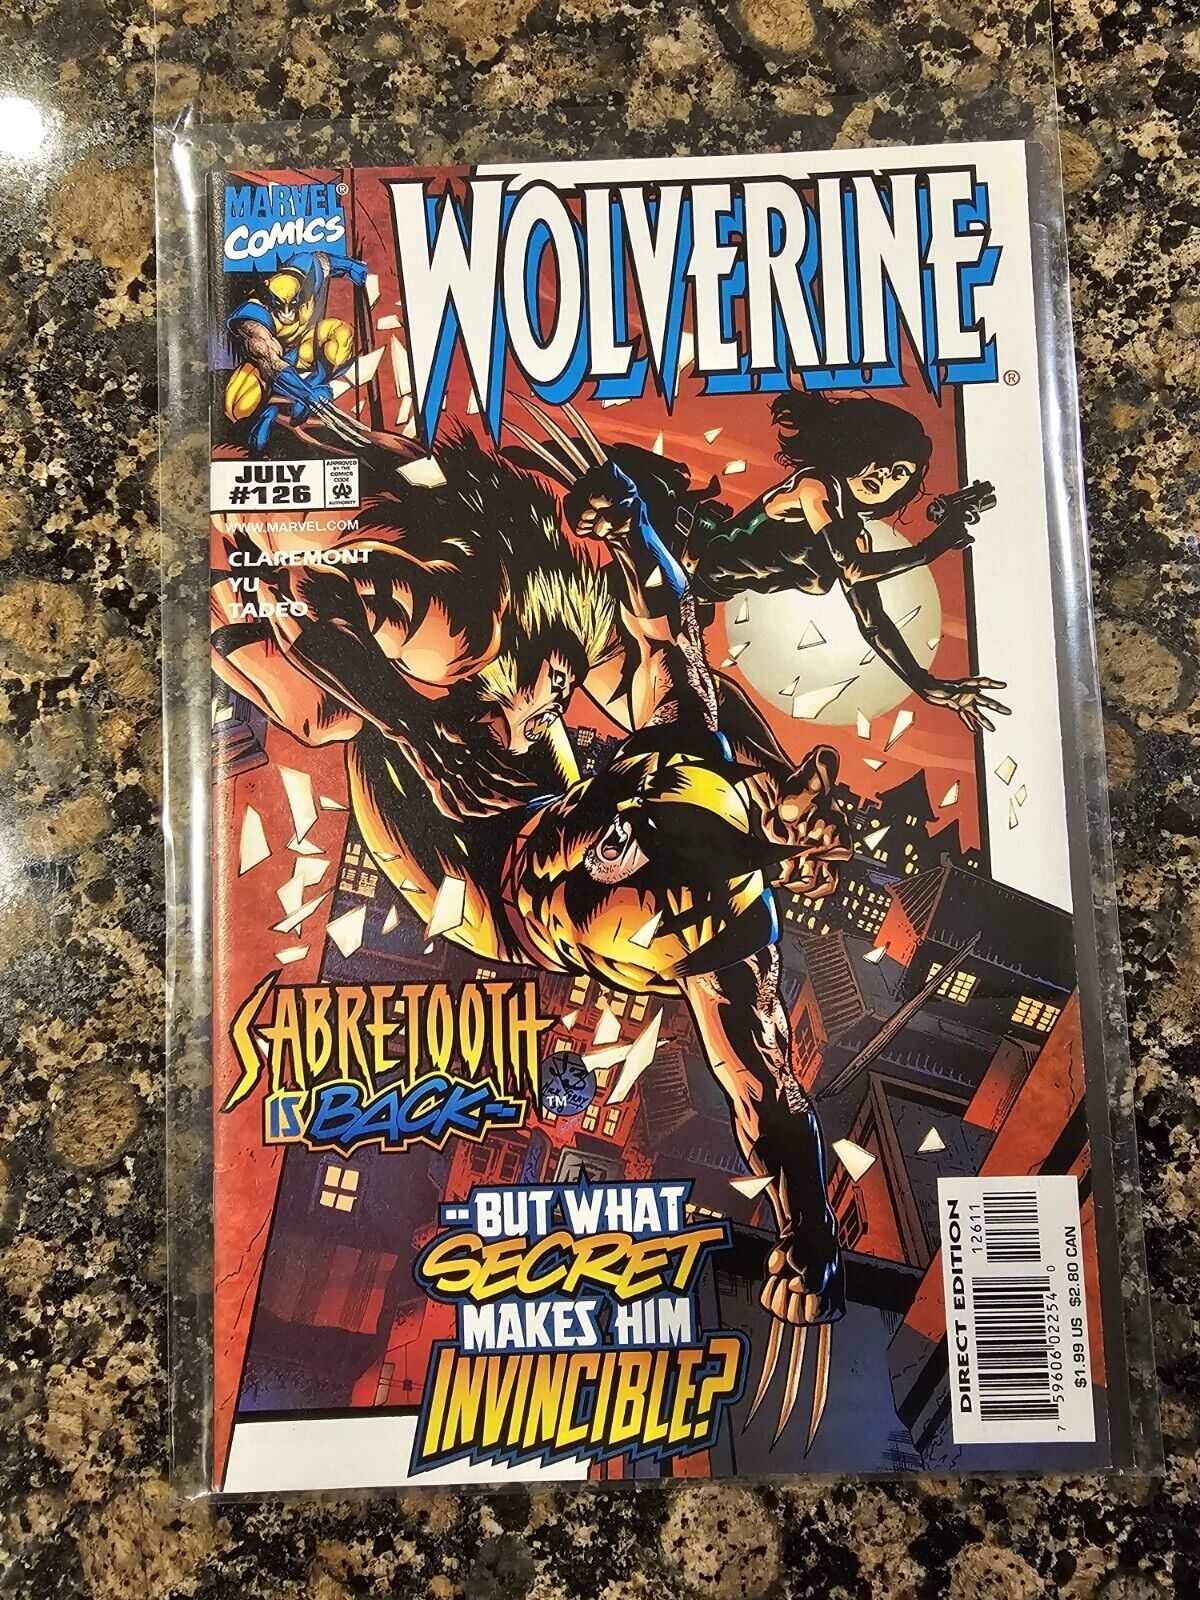 Wolverine #126 (July 1998) Sabretooth is Back